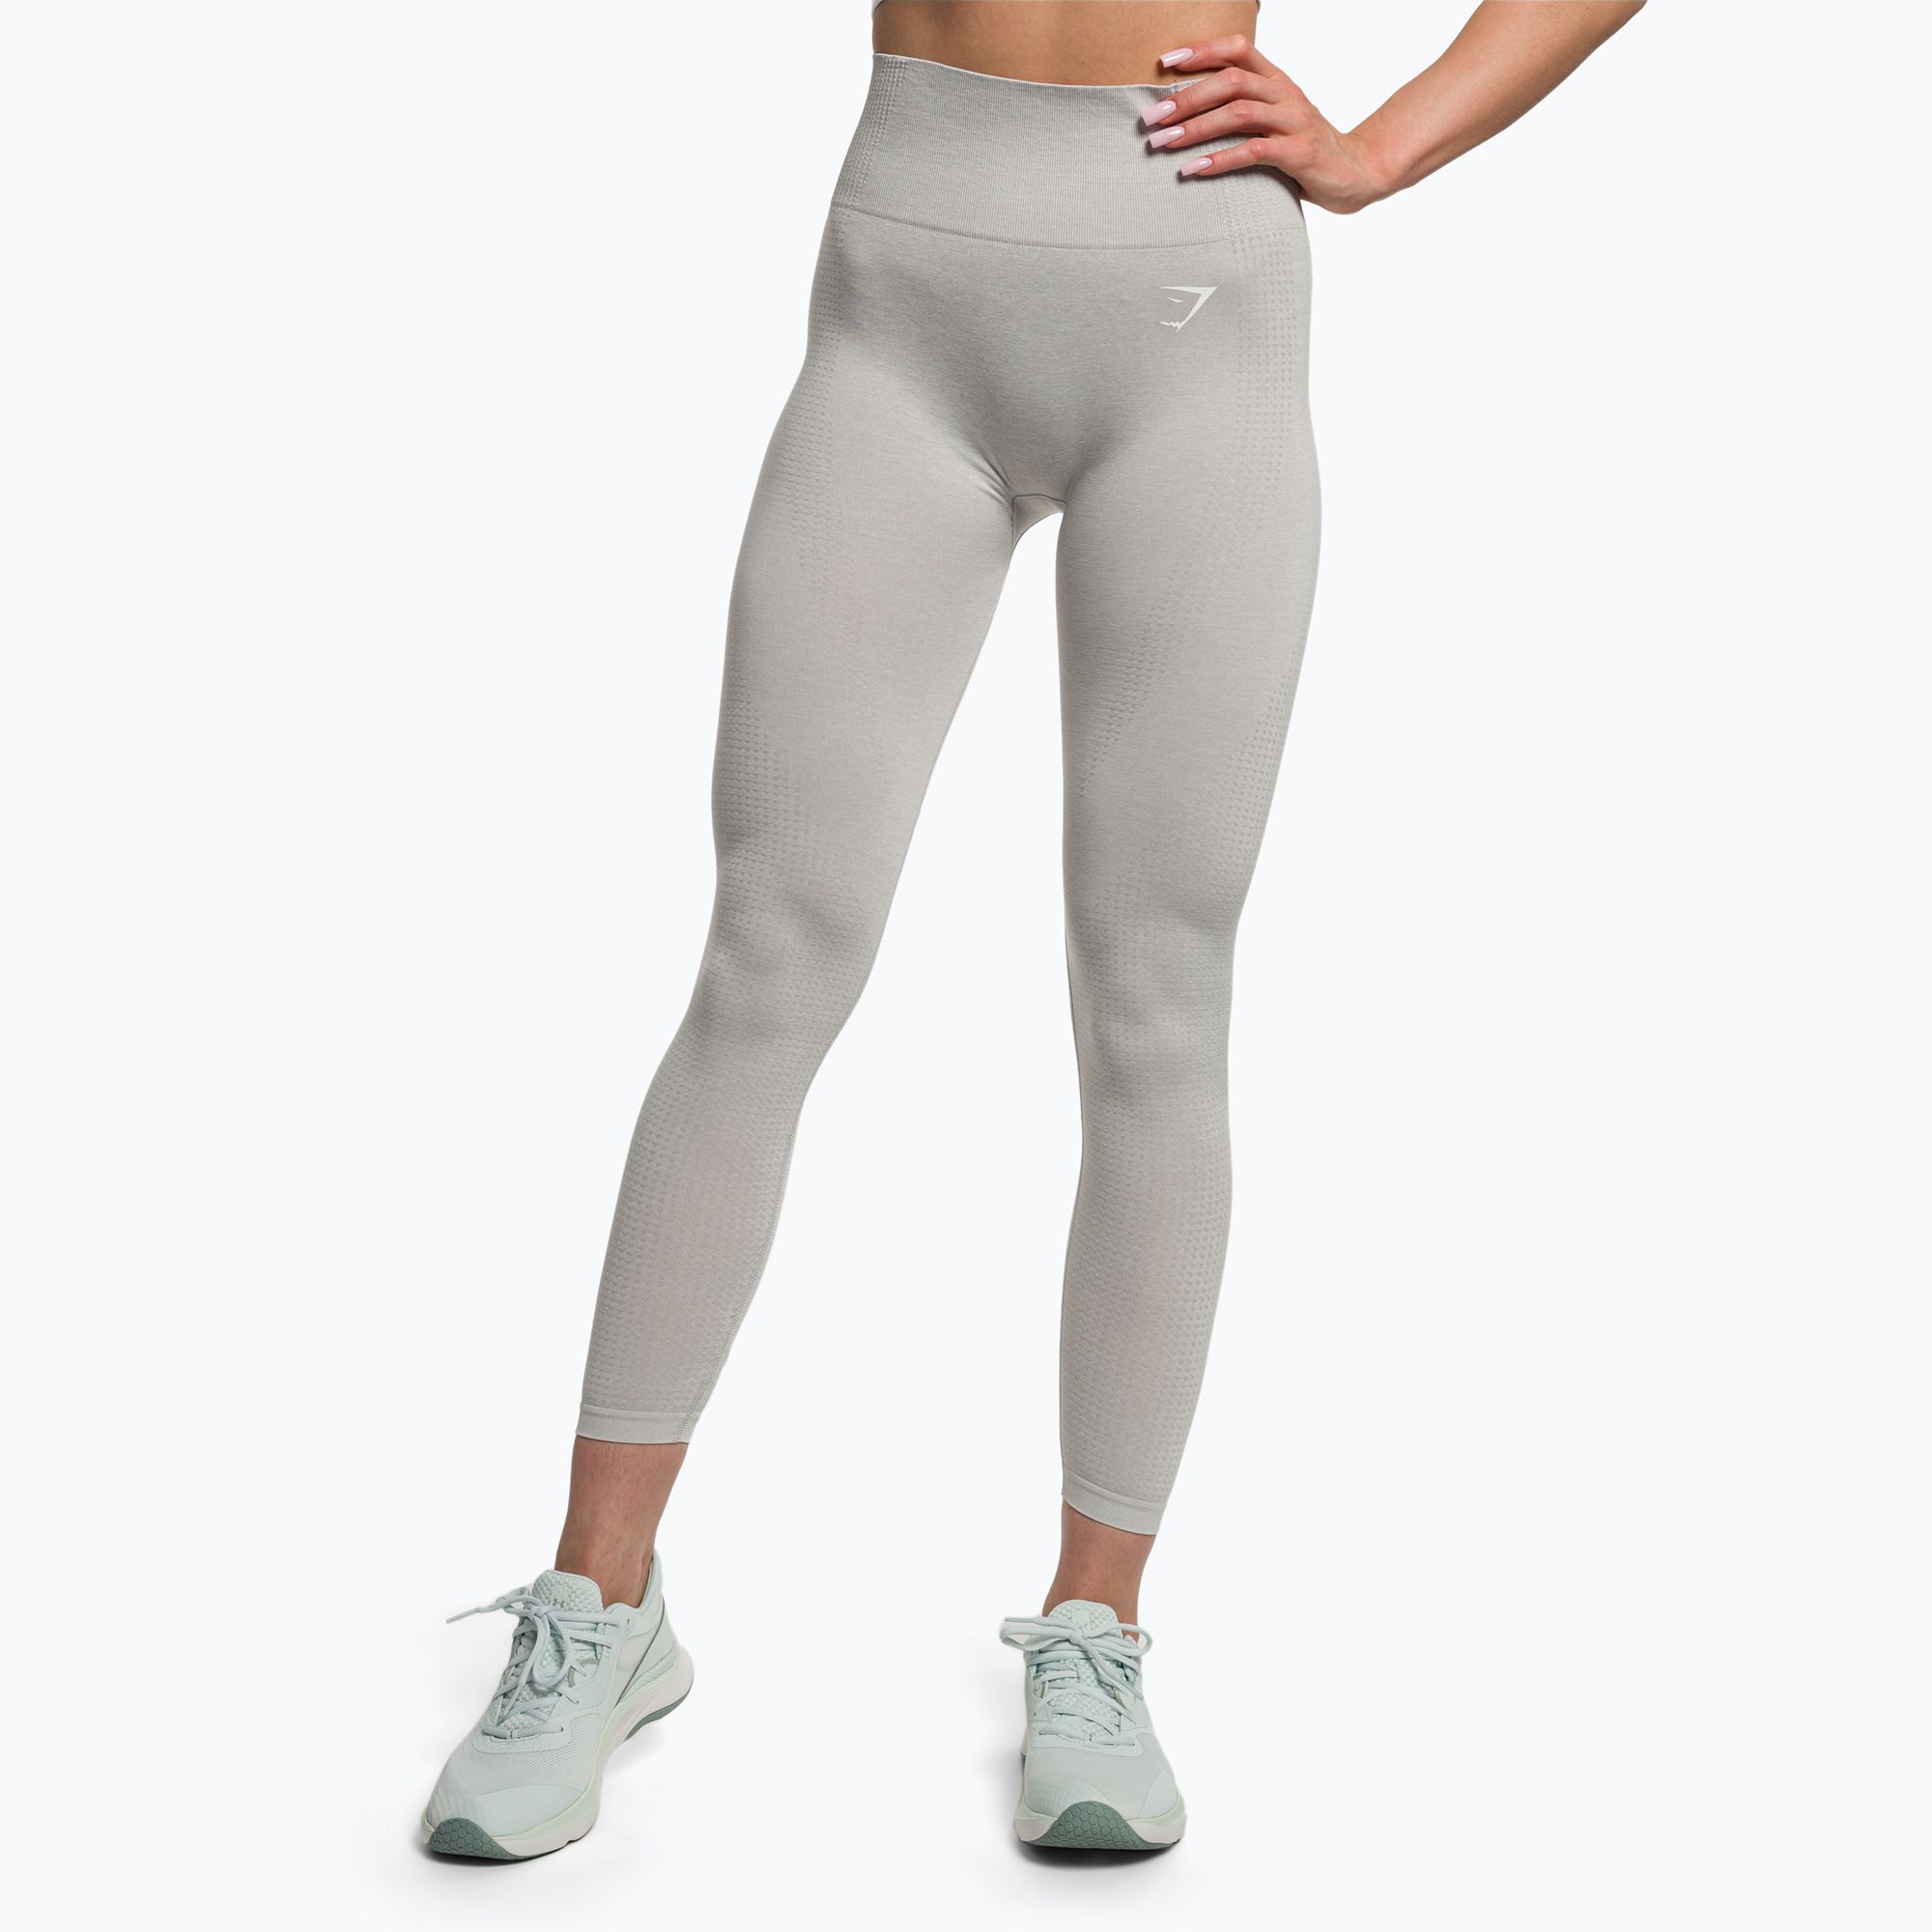 https://sportano.com/img/986c30c27a3d26a3ee16c136f92f4ff5/5/0/5057913274436_1-jpg/women-s-training-leggings-gymshark-vital-seamless-light-grey-marl-0.jpg